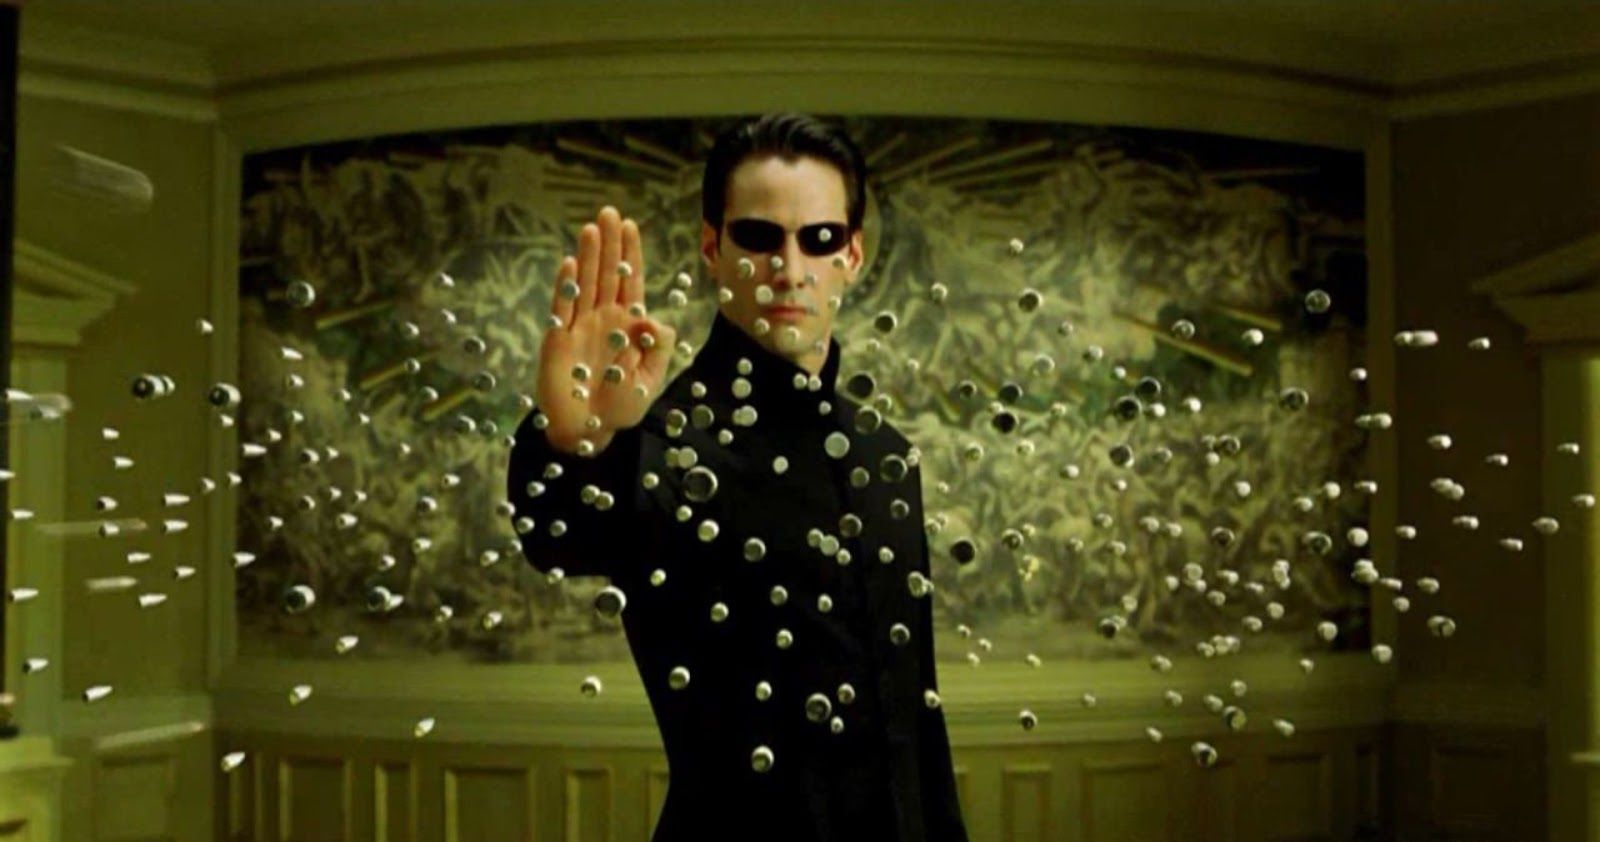 20 Things About The Matrix That Make No Sense